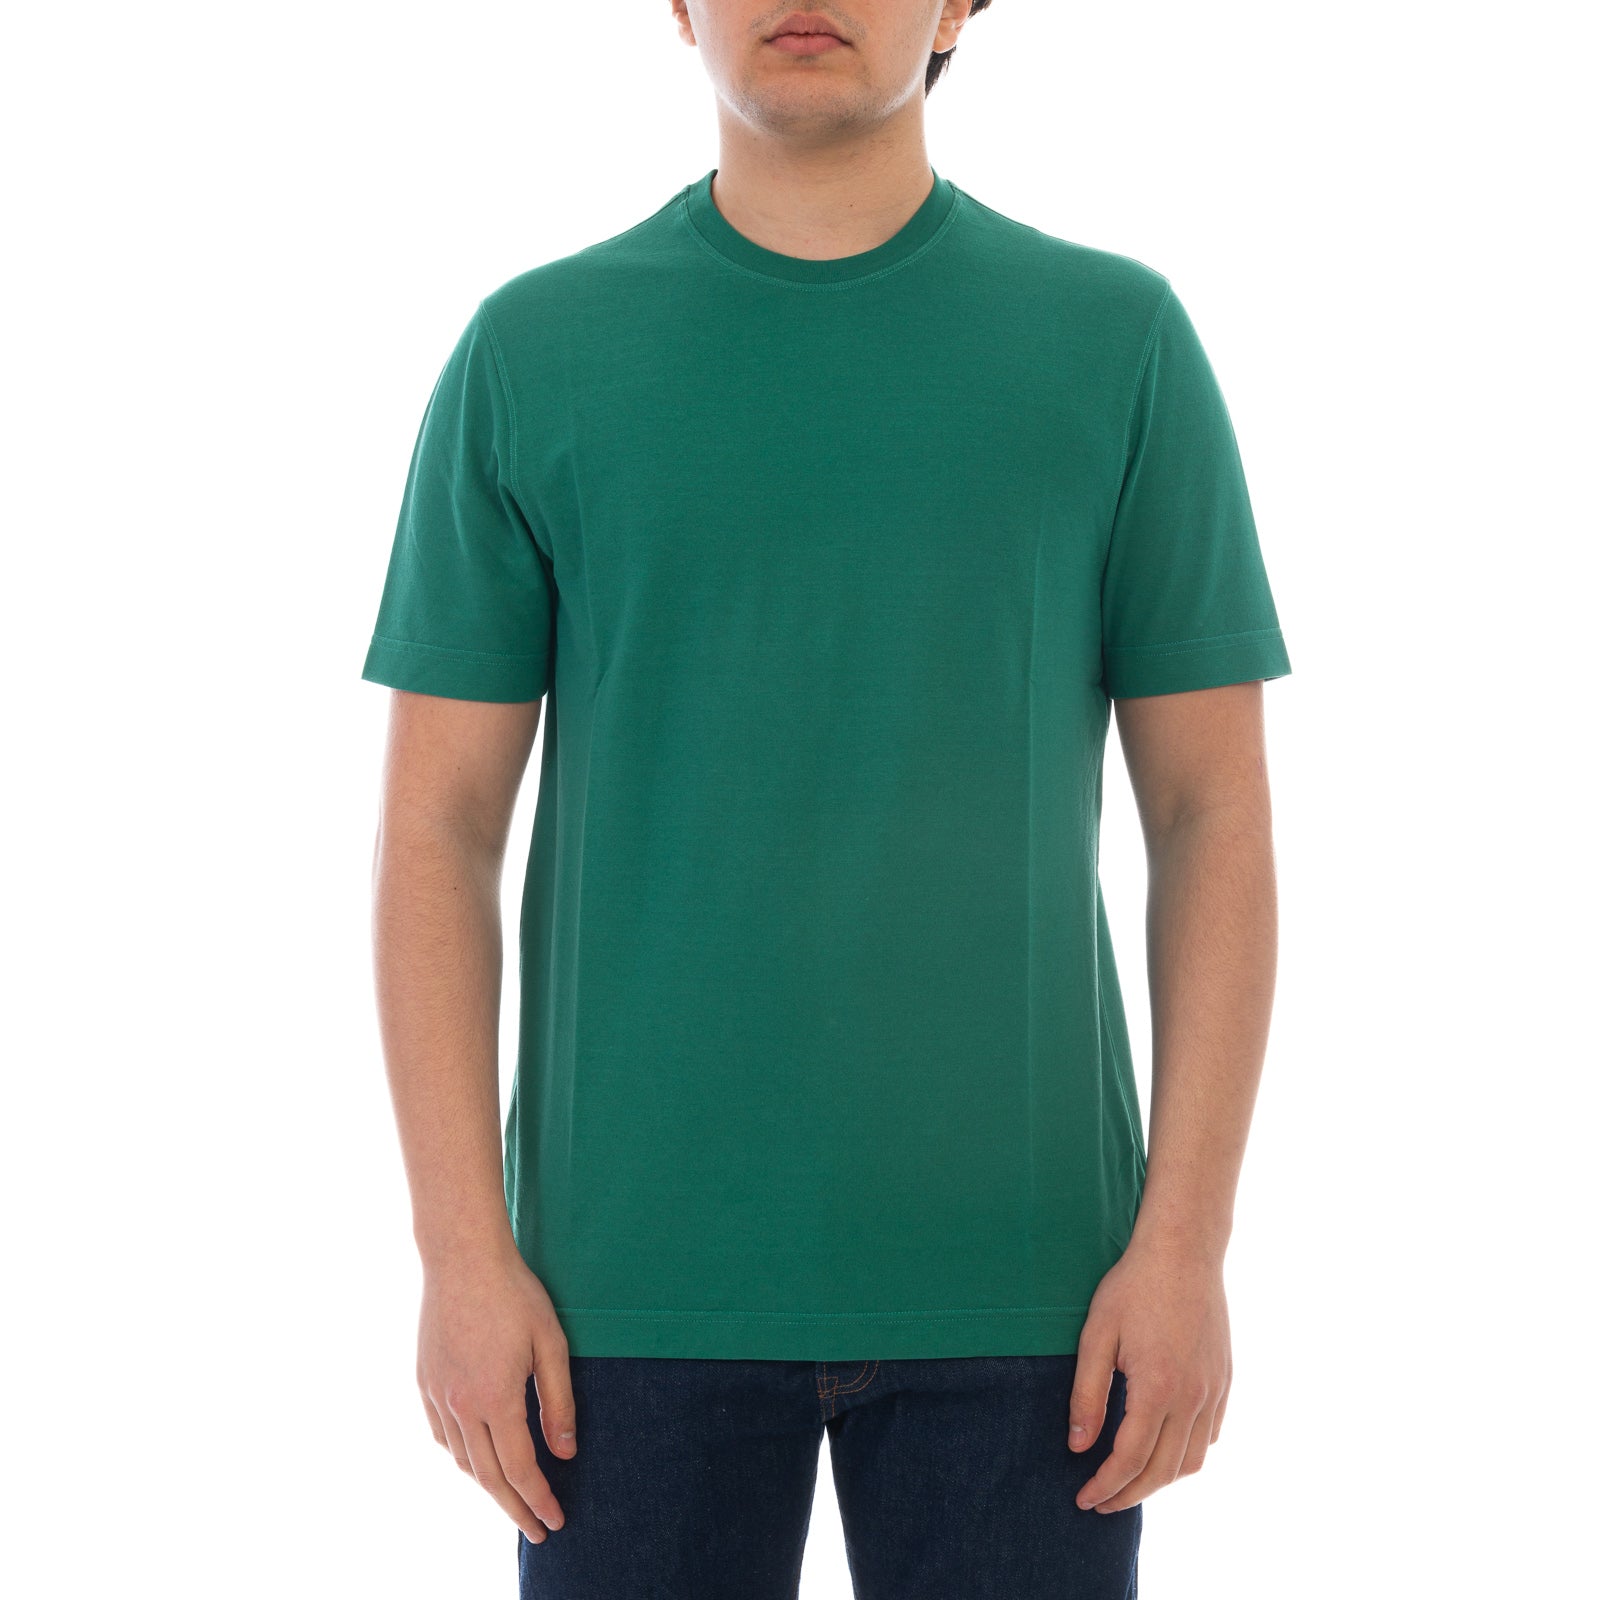 T-shirt ZANONE
Verde